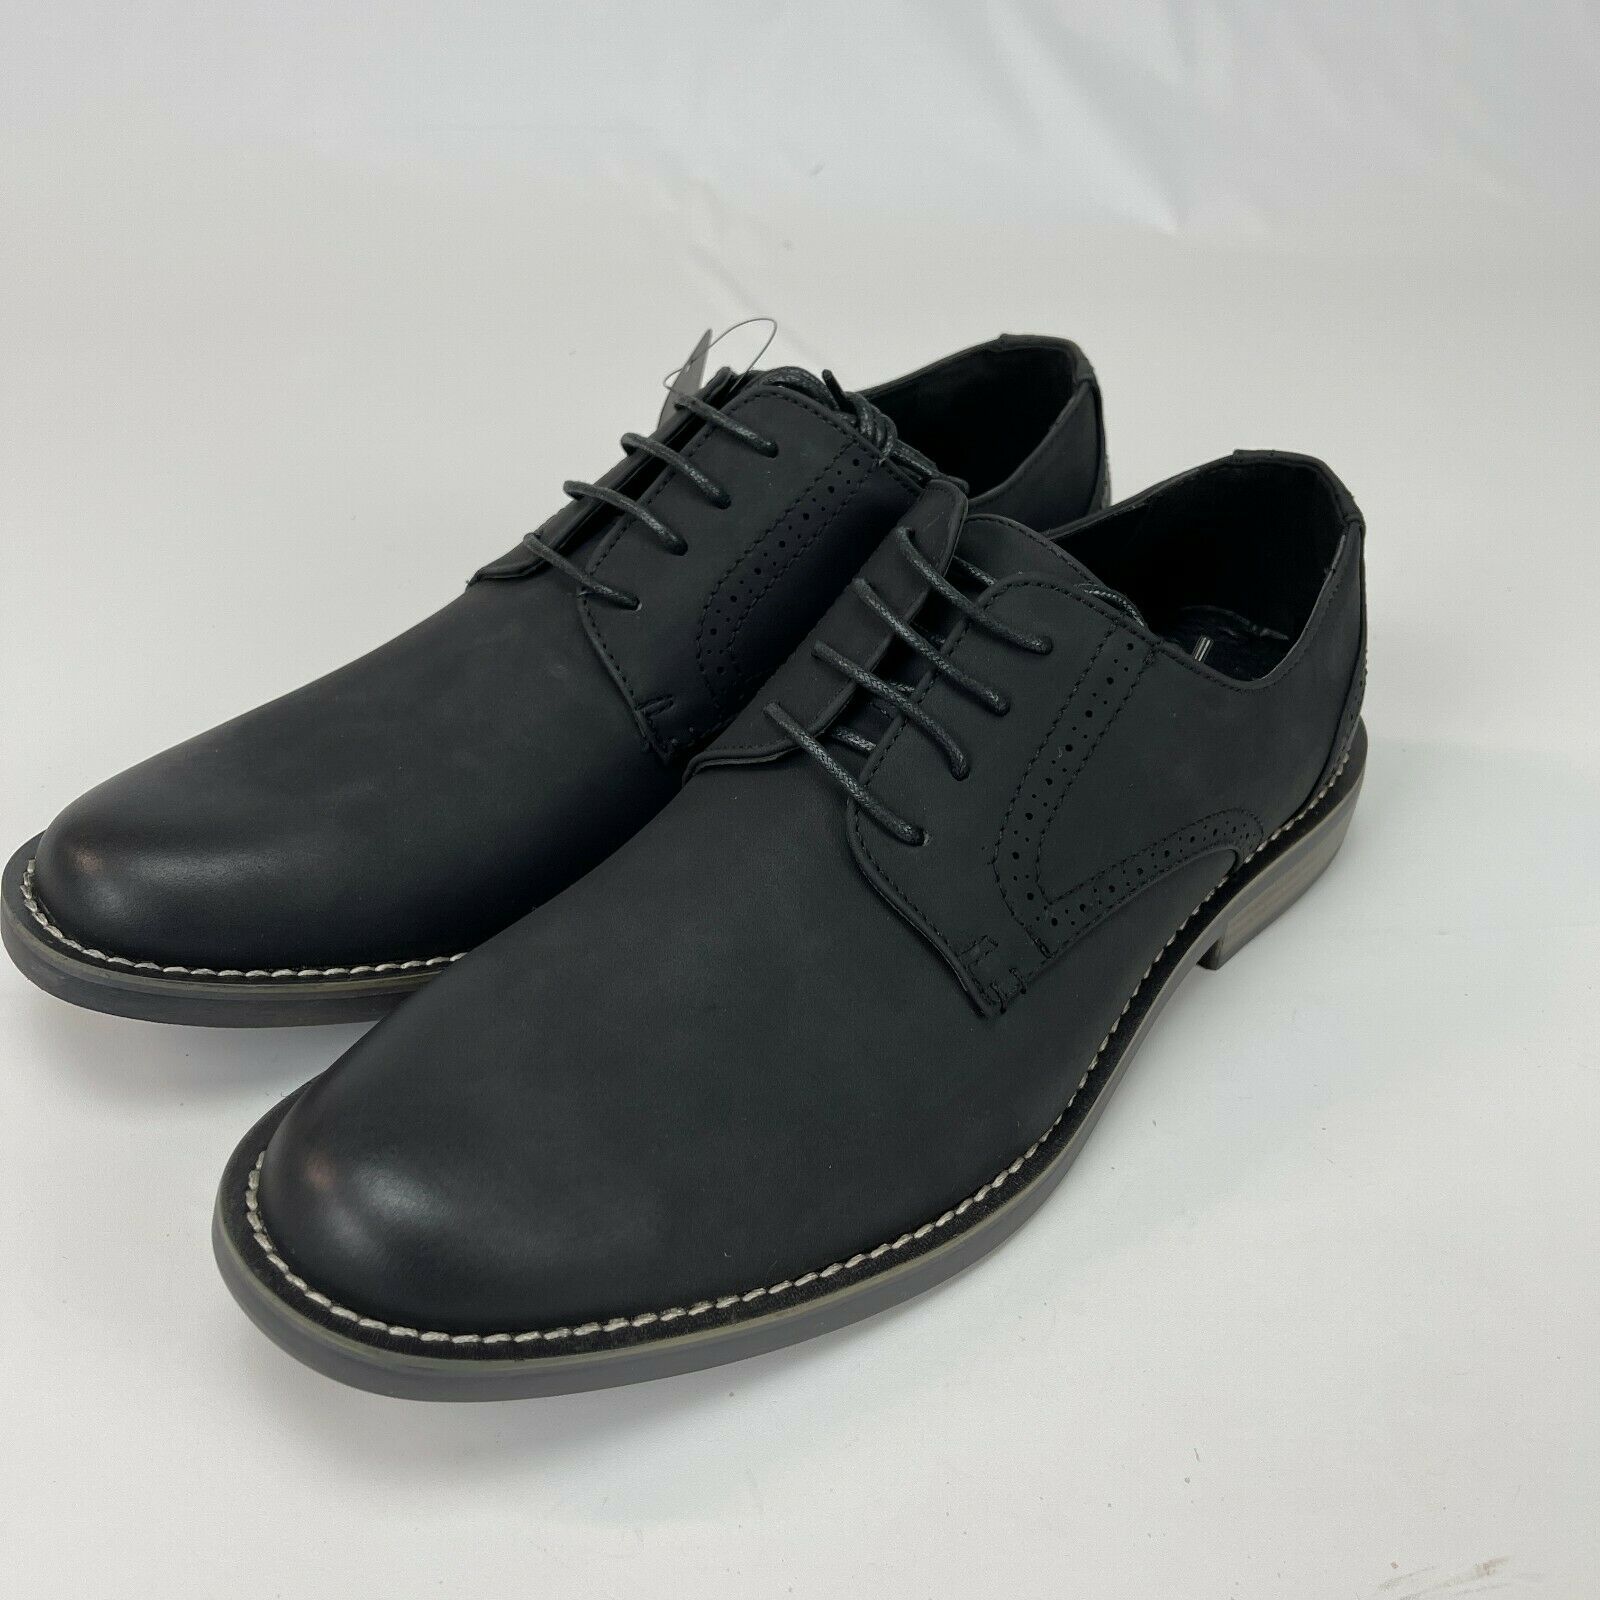 Jousen Mens Retro Suede Black Casual Dress Oxford Lace Up Shoes Size 9.5